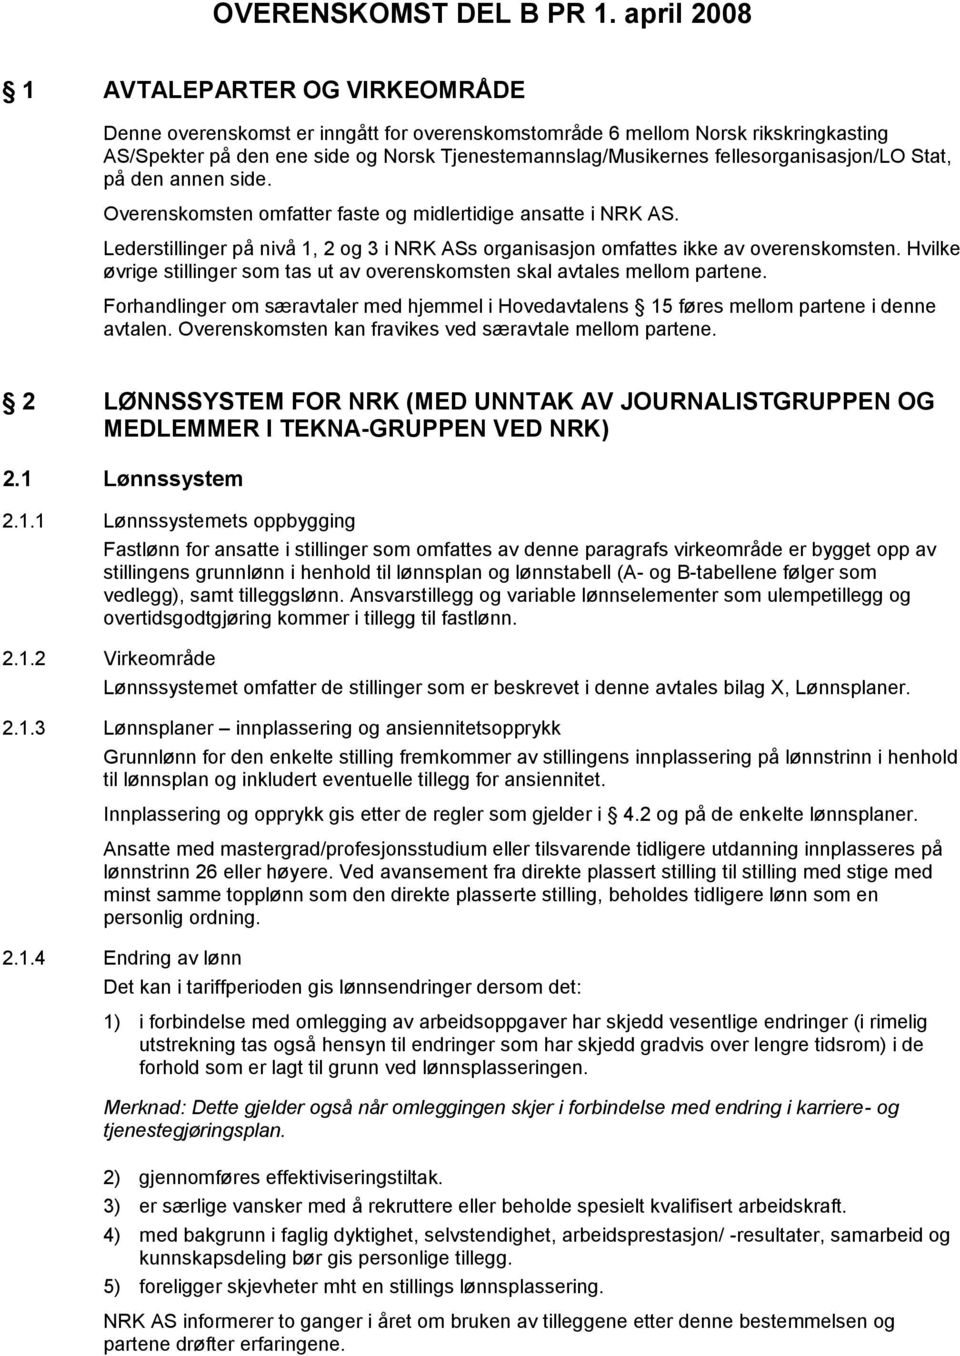 fellesorganisasjon/lo Stat, på den annen side. Overenskomsten omfatter faste og midlertidige ansatte i NRK AS. Lederstillinger på nivå 1, 2 og 3 i NRK ASs organisasjon omfattes ikke av overenskomsten.